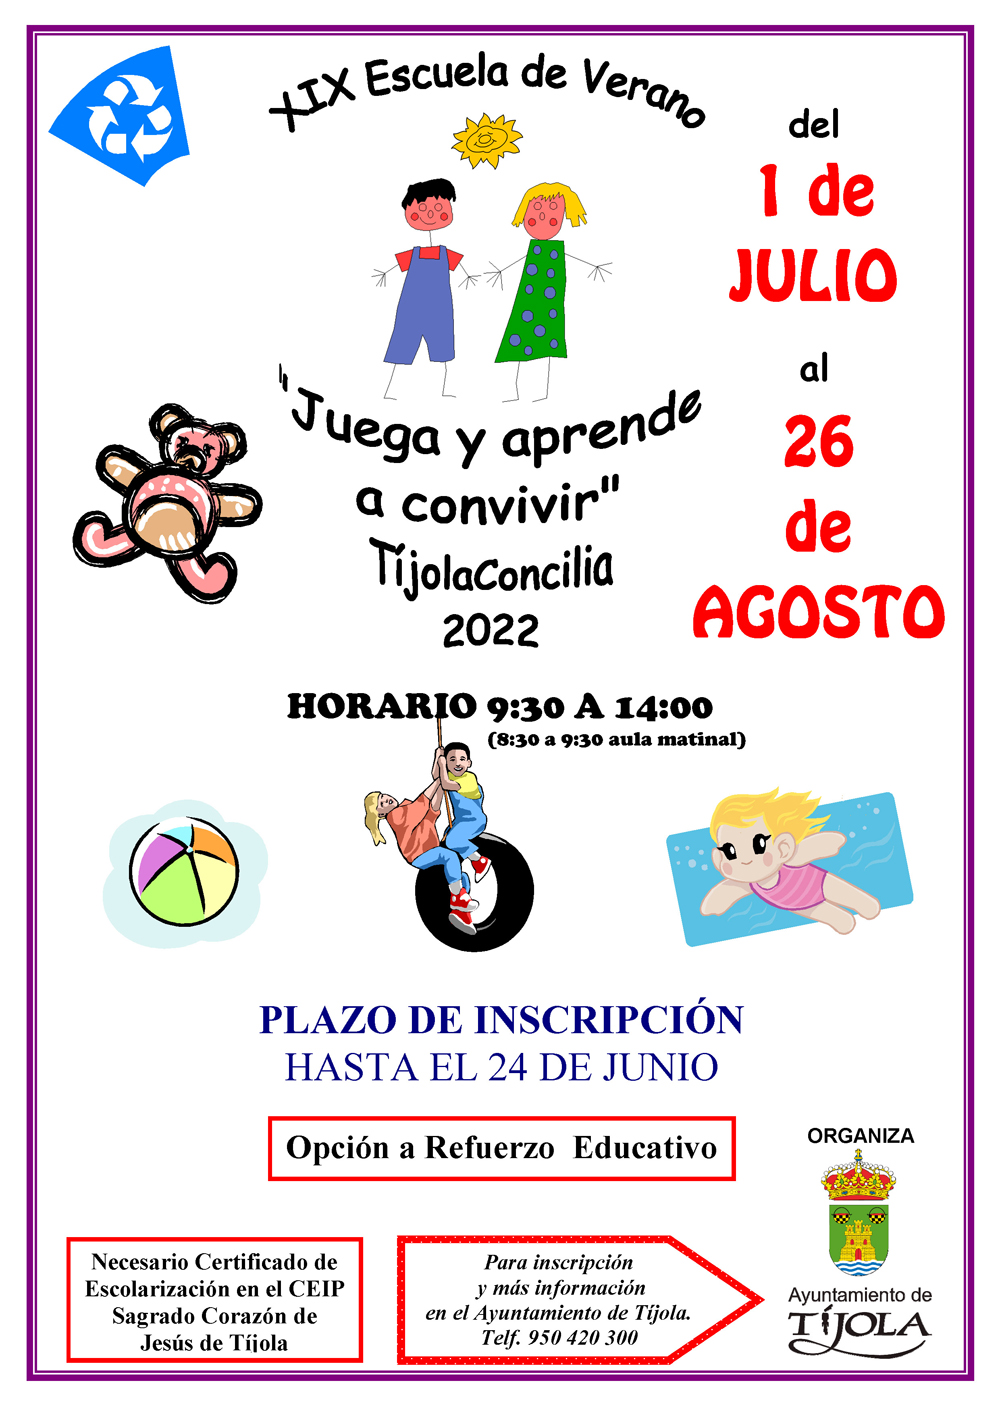 Imagen del Cartel de la Escuela de Verano 2022. Imágenes de dibujos infantiles de fondo.